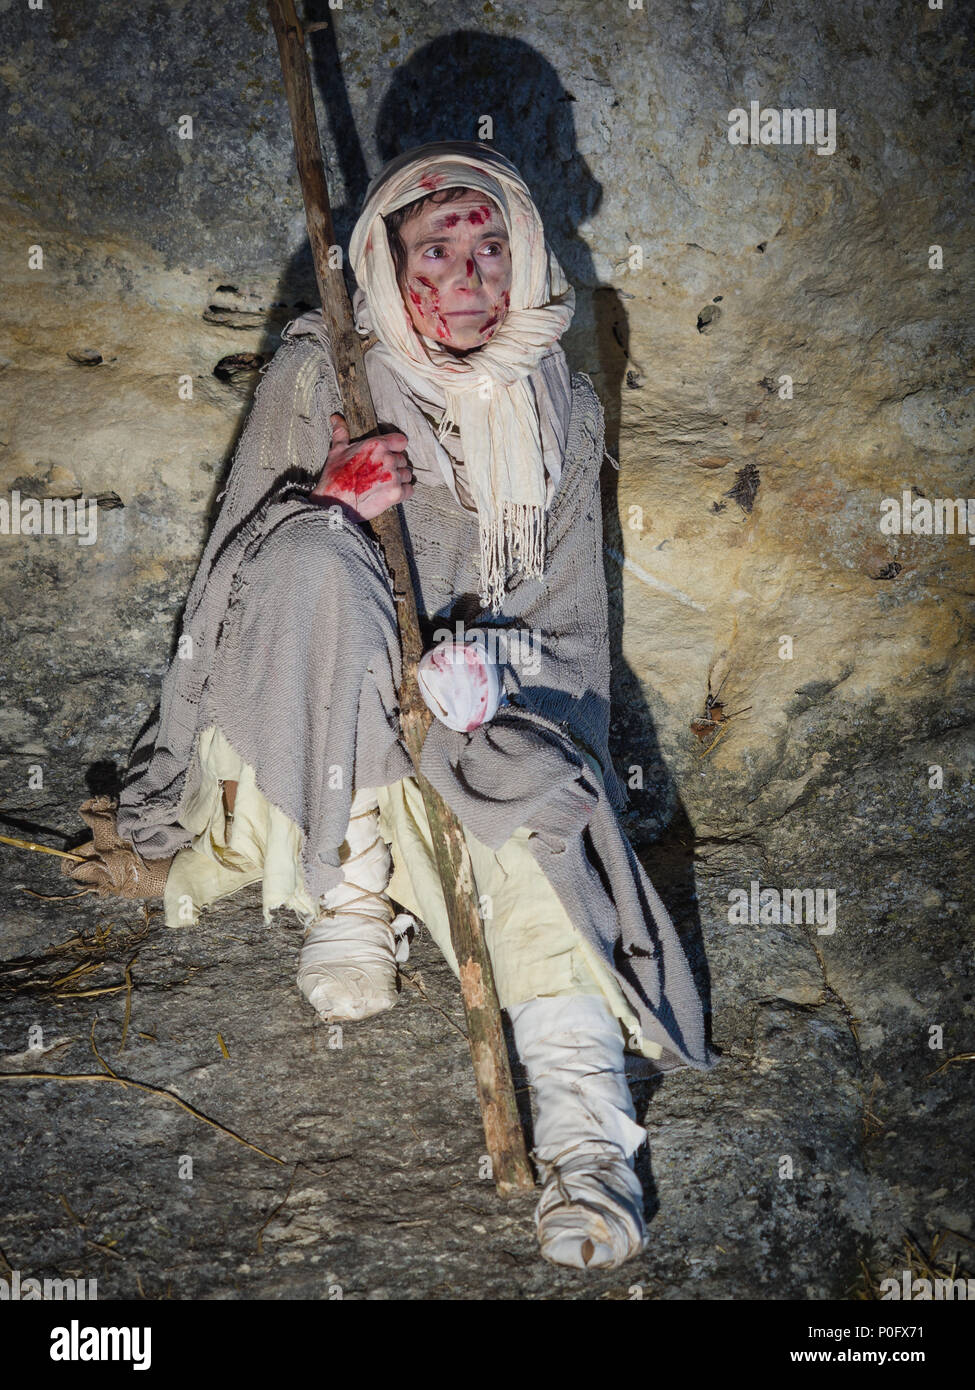 Villaga, Italia - 30 dicembre 2017: Lebbrosa vestito di stracci durante una  rievocazione storica nelle grotte di Villaga, Italia Foto stock - Alamy